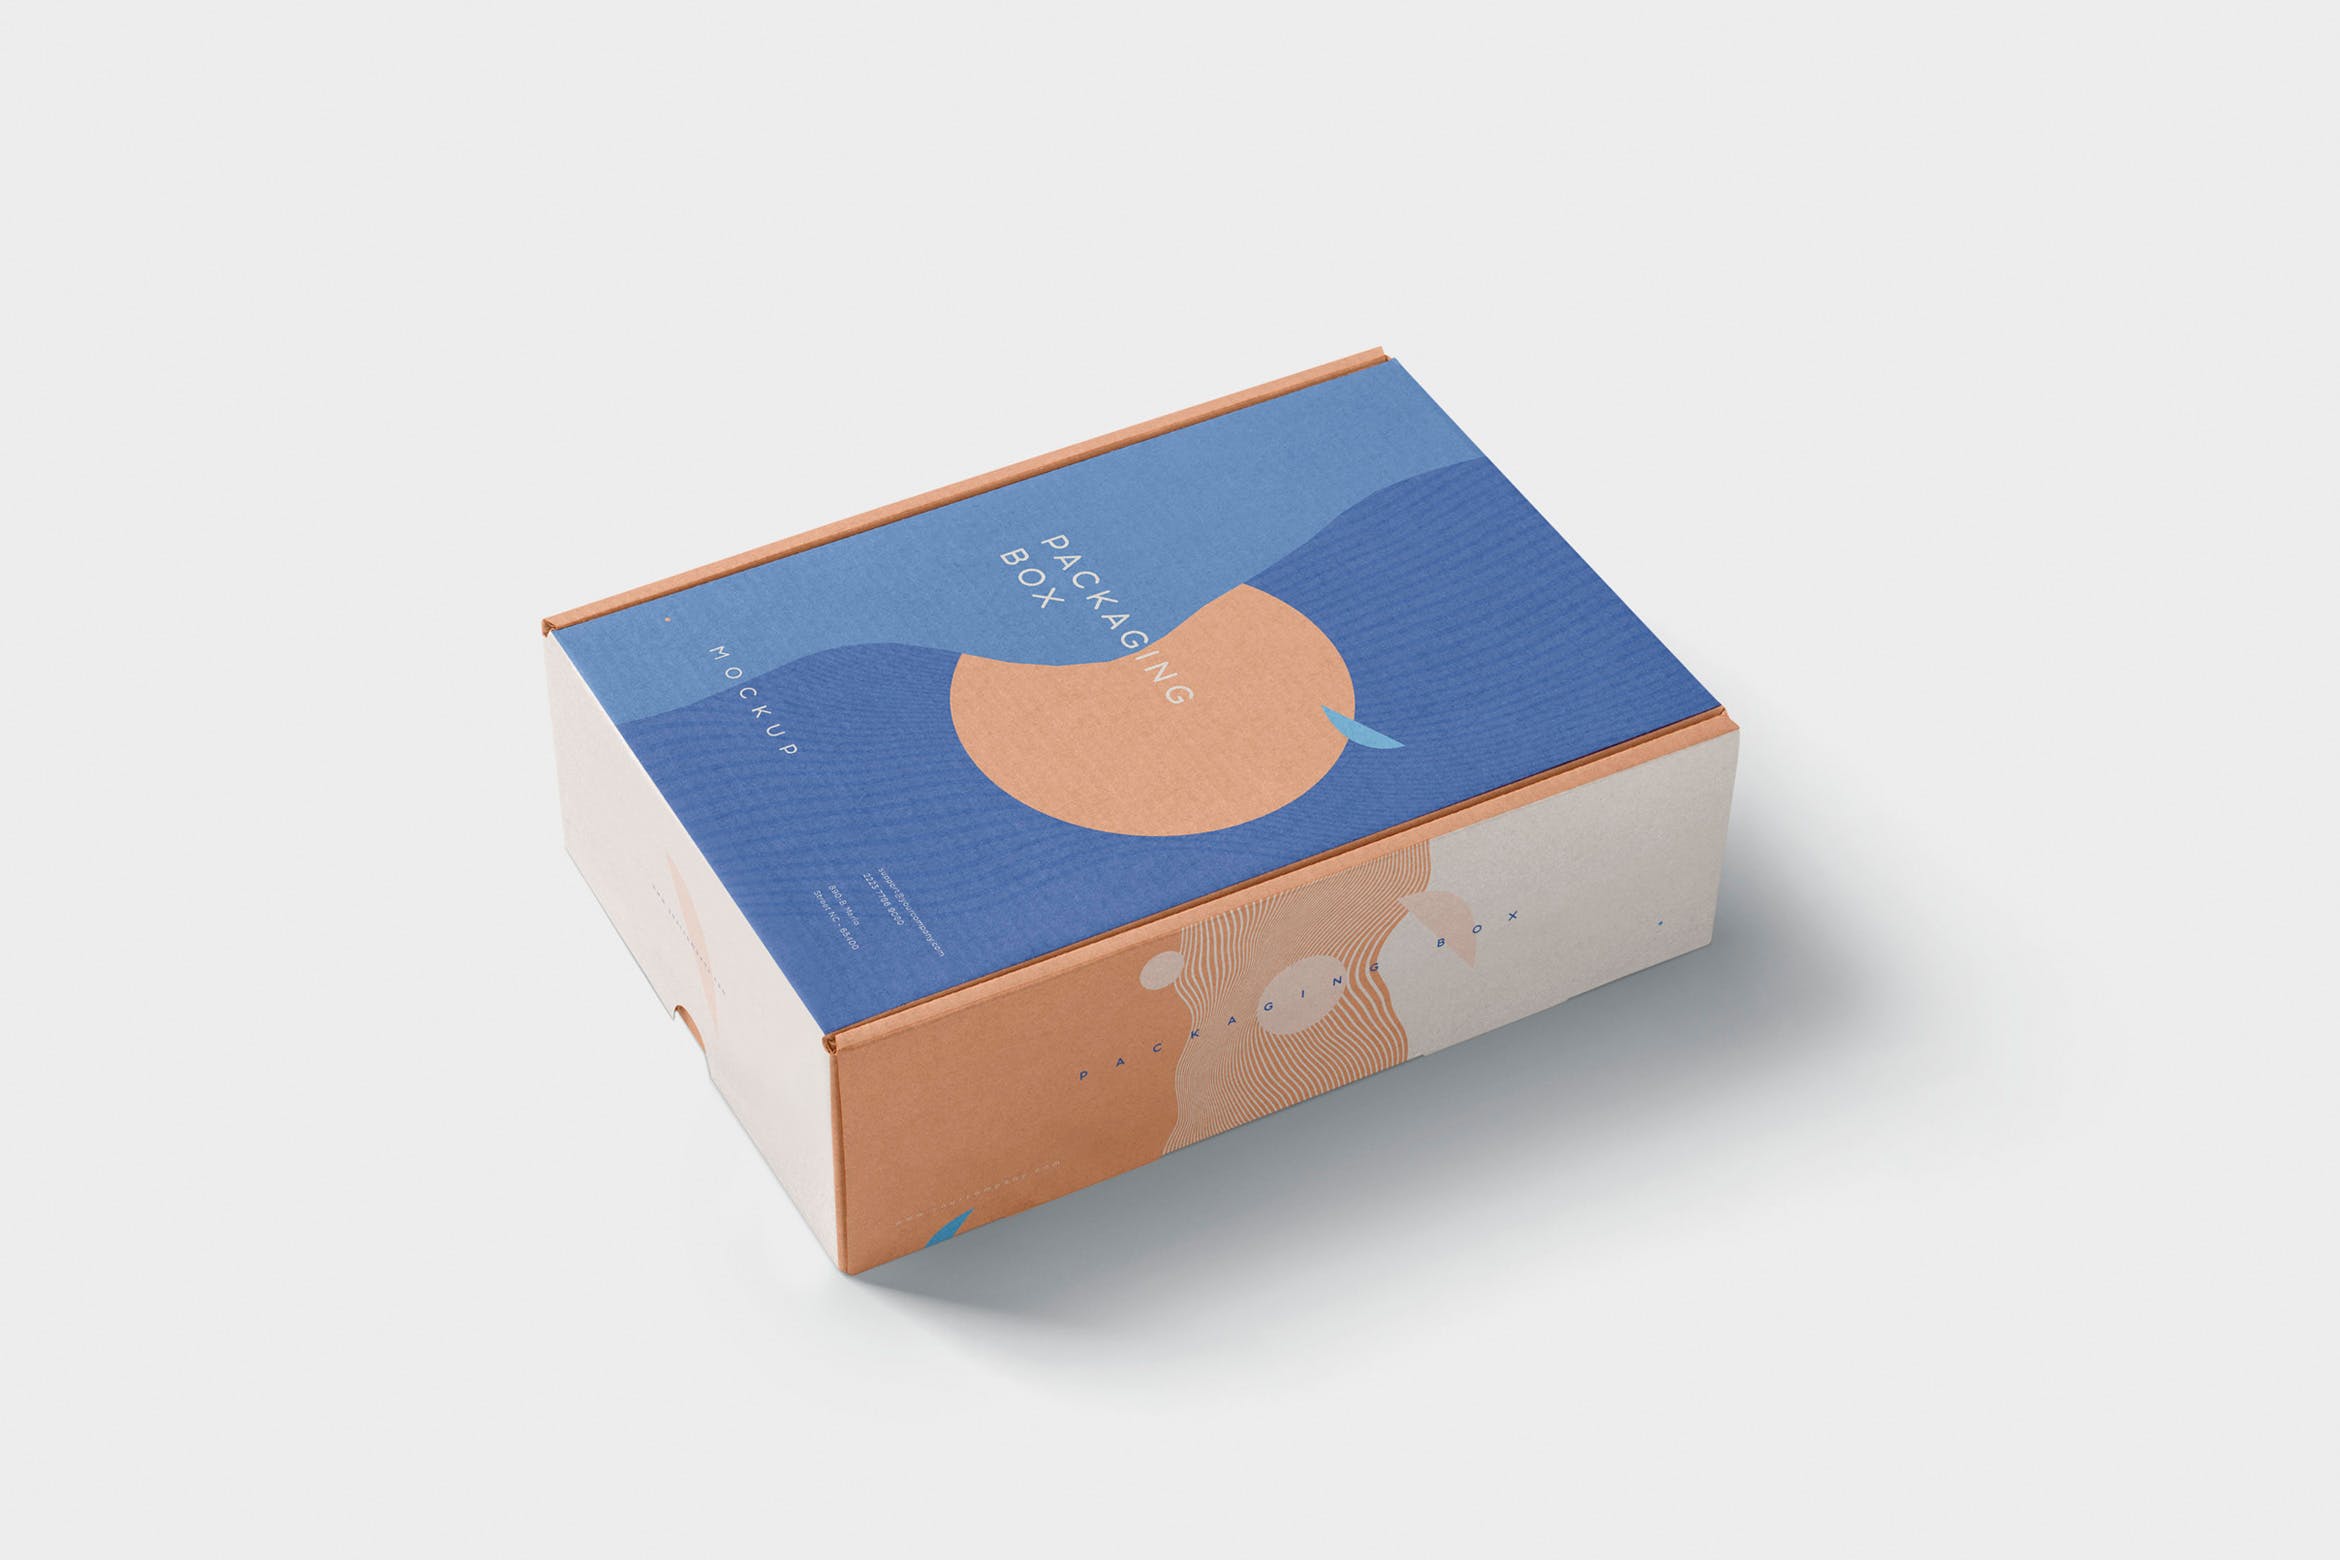 矩形包装盒设计效果图多角度预览样机 5 Rectangular Packaging Box Mockups插图